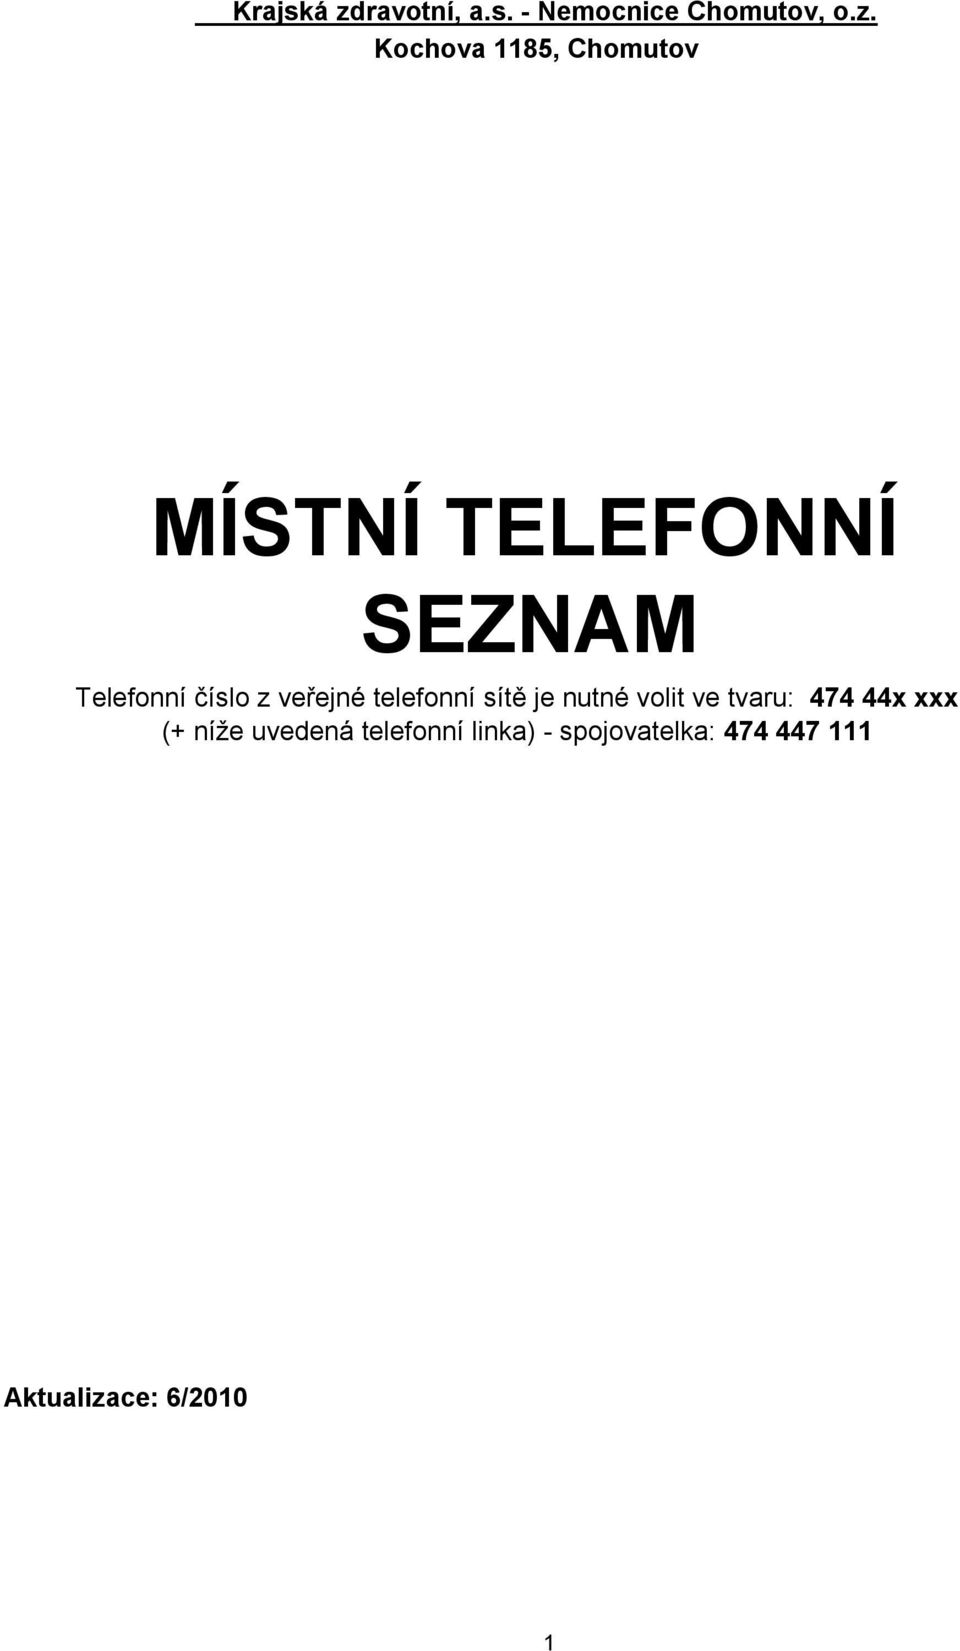 Kochova 1185, Chomutov MÍSTNÍ TELEFONNÍ SEZNAM Telefonní číslo z